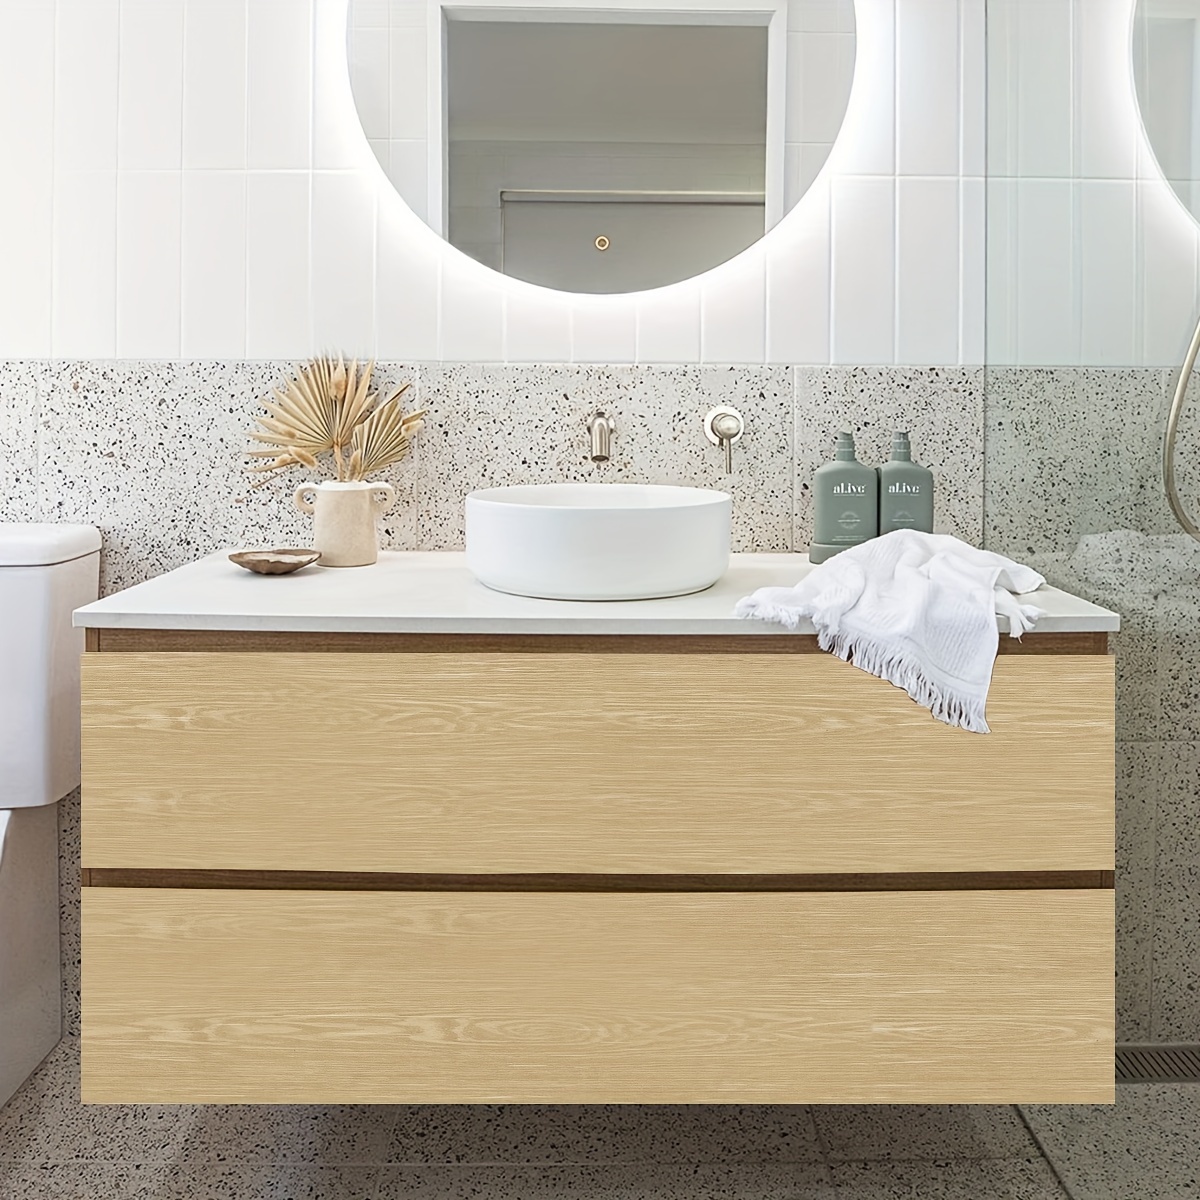  UTEX Almacenamiento de baño sobre el inodoro, organizador de  gabinete de baño con estantes ajustables, ahorro de espacio de baño para  baño, color blanco : Hogar y Cocina